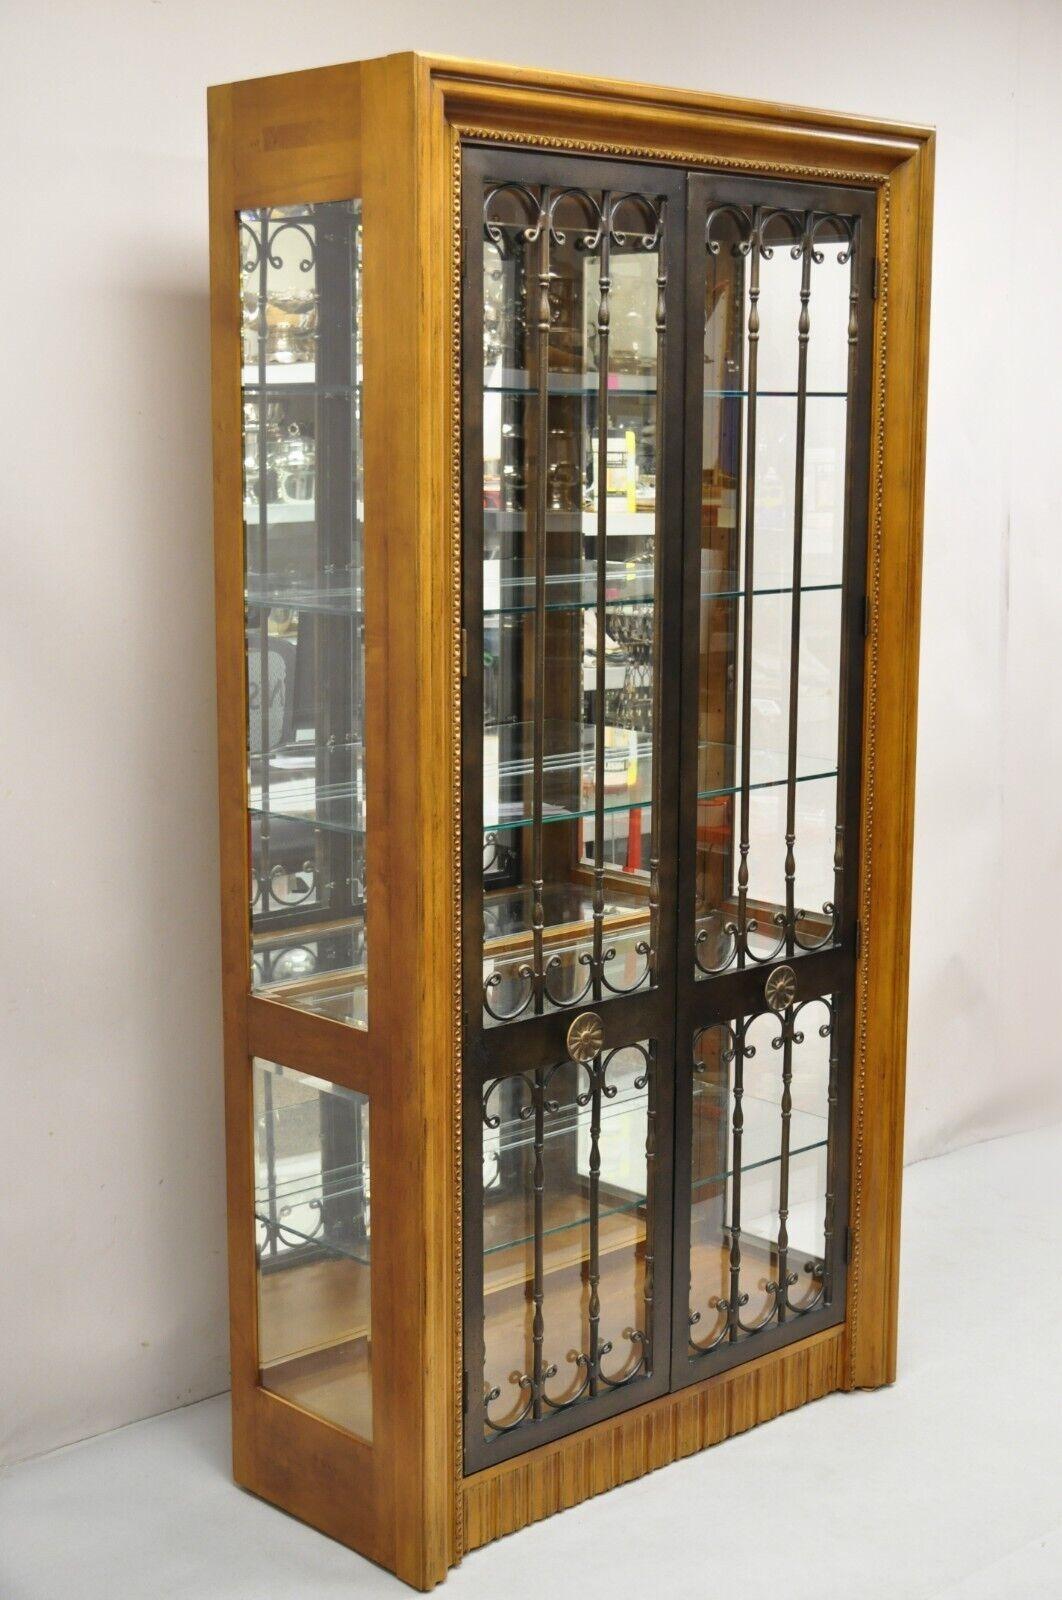 Bernhardt 354-356 Modern Cherry Wood & Iron Door Mediterranean Modern Lighted Curio China Display Cabinet. Artikelmerkmale Spiegelrückseite, verzierte Eisentüren, Berührungslicht mit 3 Beleuchtungsstufen, 4 verstellbare Glasböden und 1 fester